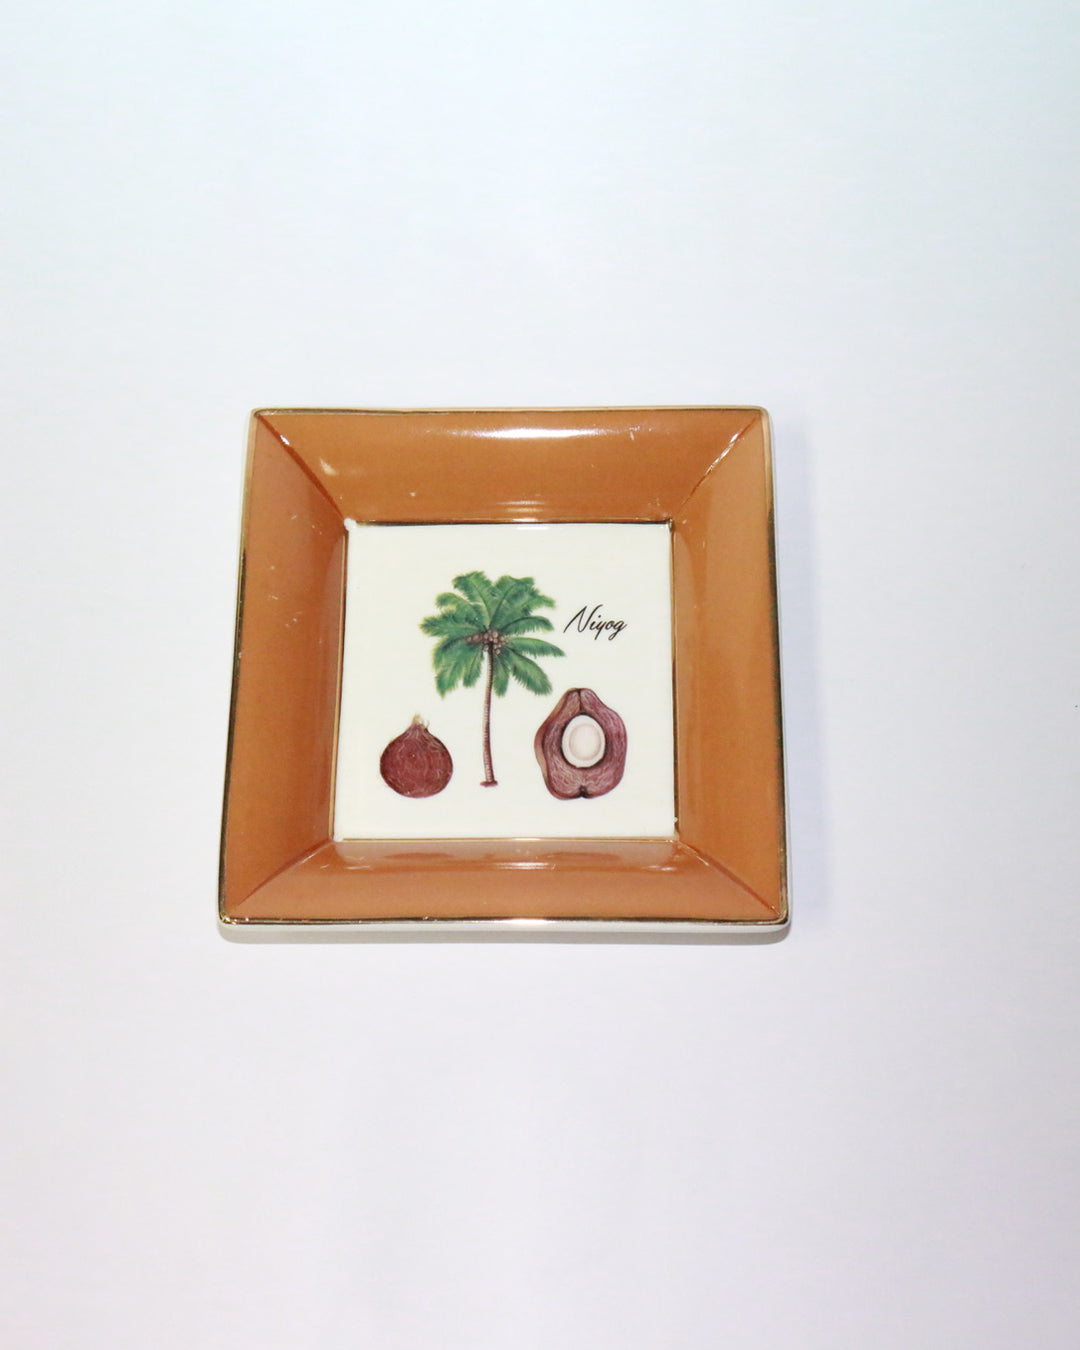 Botanical Plate - Niyog (Framed)